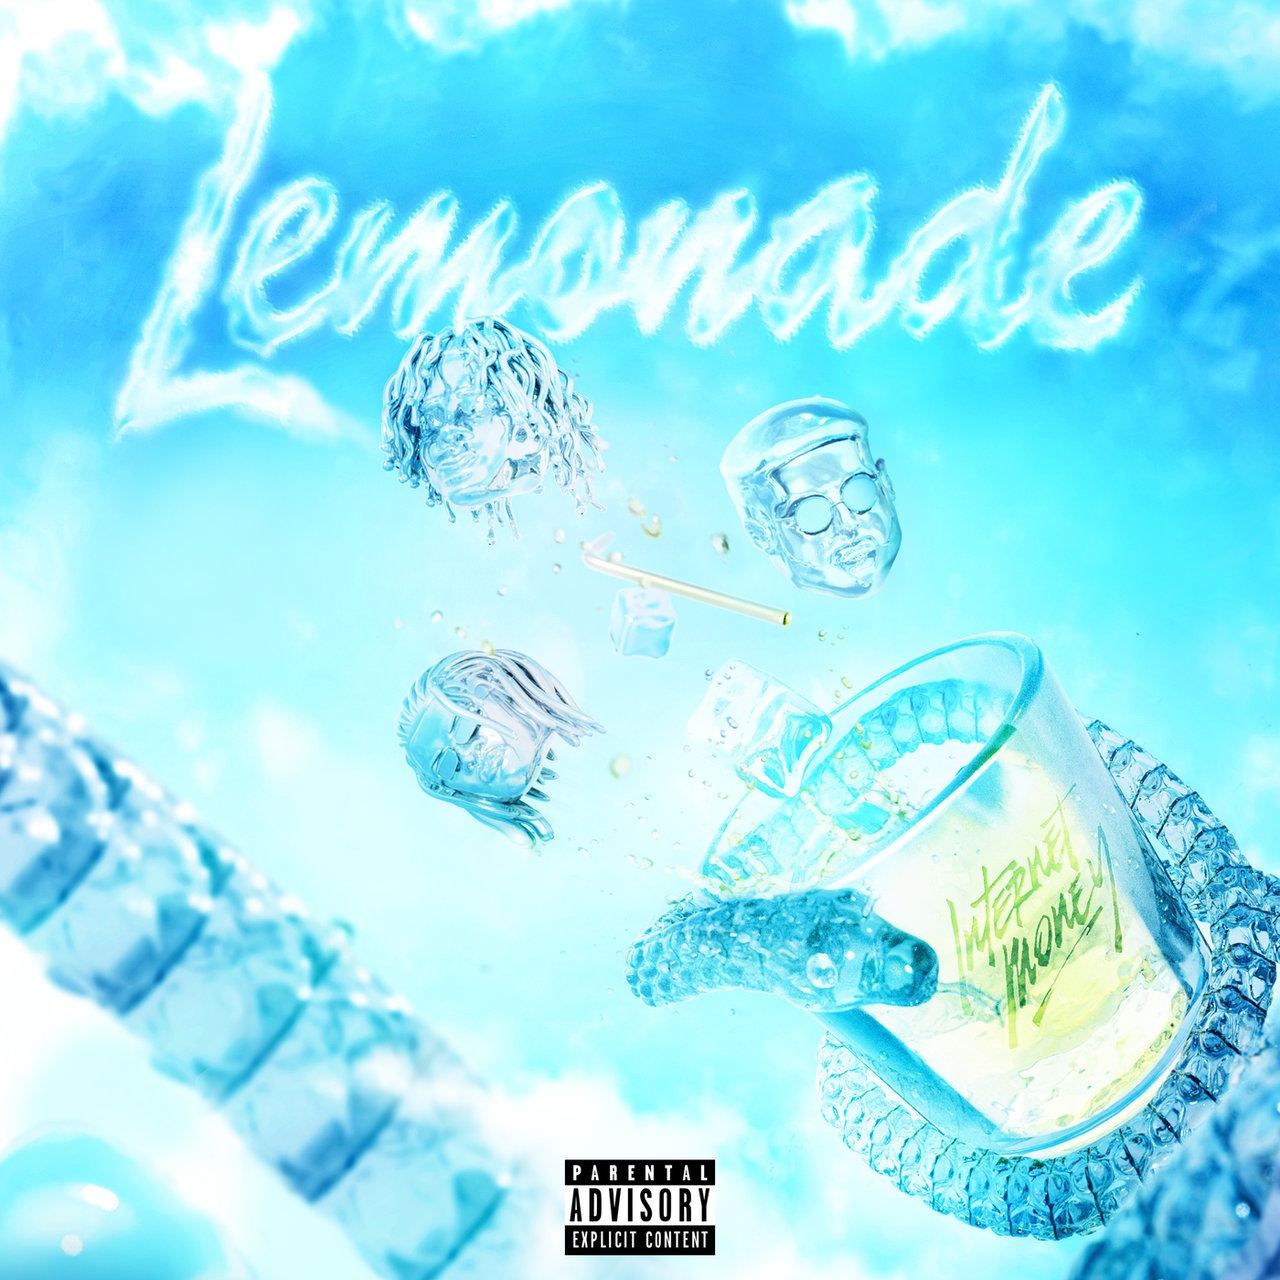 Internet Money - Lemonade (ft. Gunna, Don Toliver and Nav) (Cover)